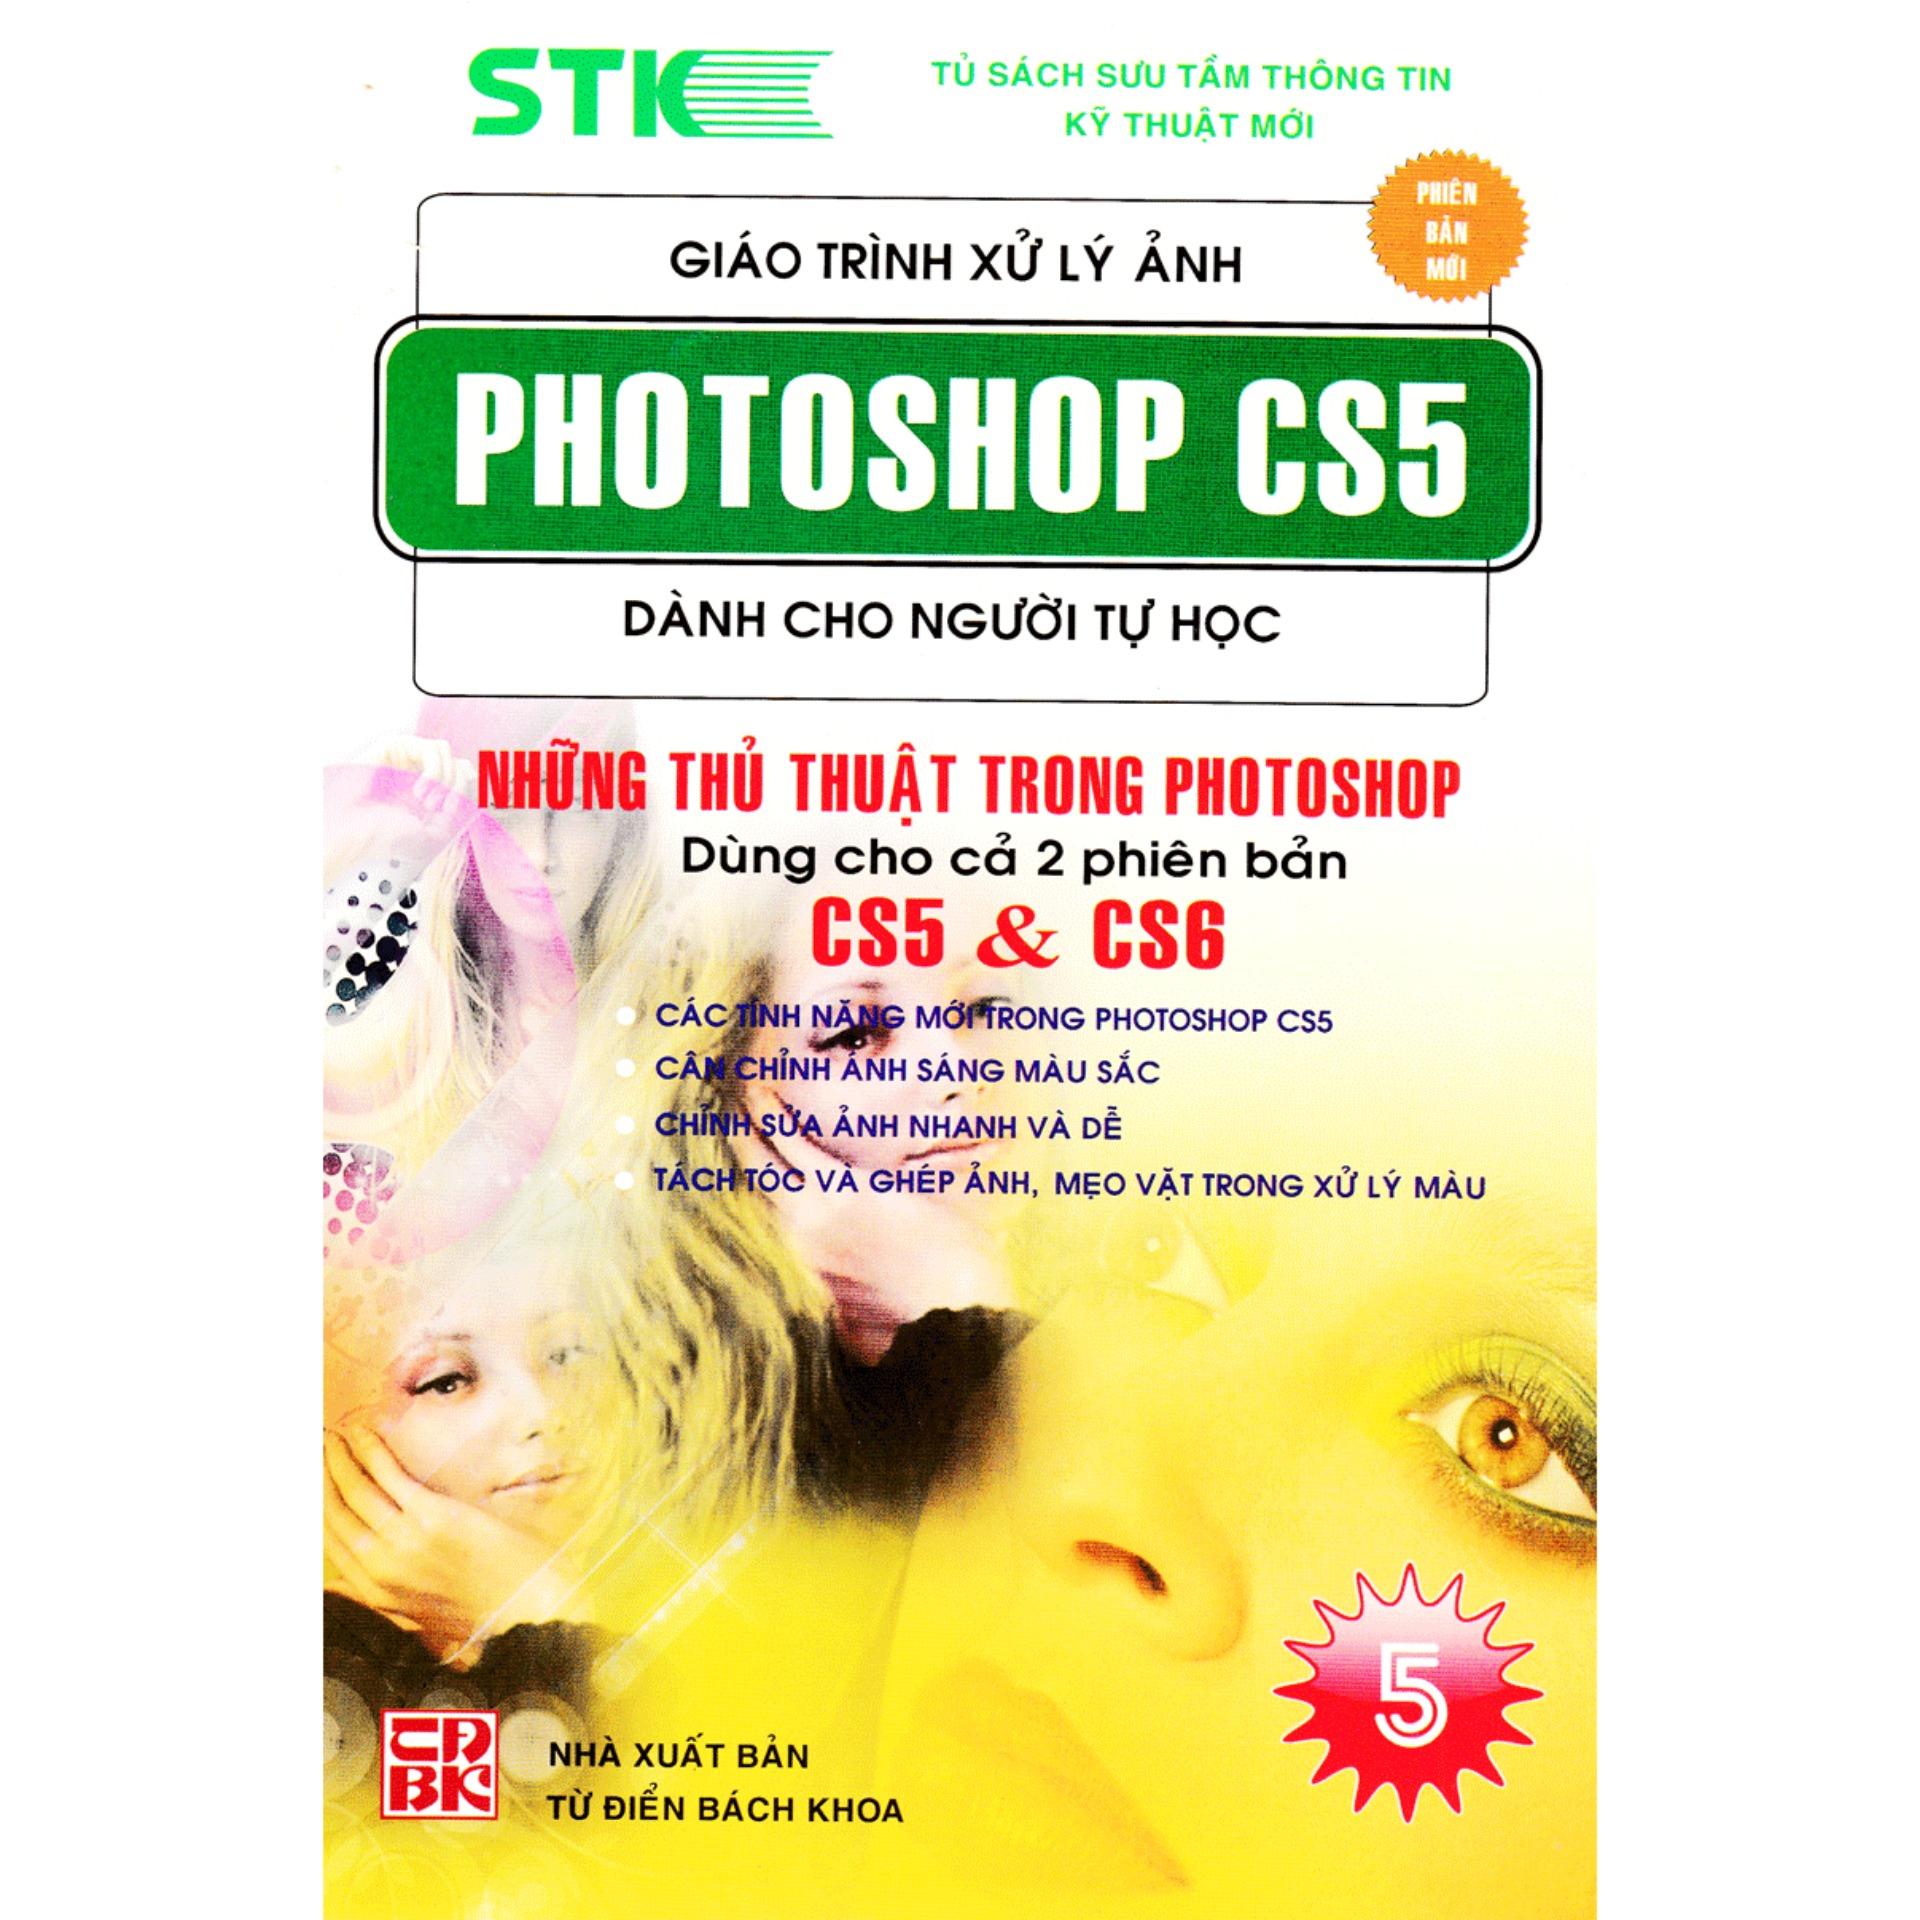 Bạn đang tìm kiếm một phần mềm xử lý ảnh chuyên nghiệp? Photoshop CS5 image processing là sự lựa chọn tốt nhất dành cho bạn! Với những tính năng mạnh mẽ của nó, bạn có thể đạt được những hiệu ứng ảnh đẹp nhất và độc đáo nhất. Không nên bỏ lỡ cơ hội khám phá nó qua hình ảnh được chia sẻ!